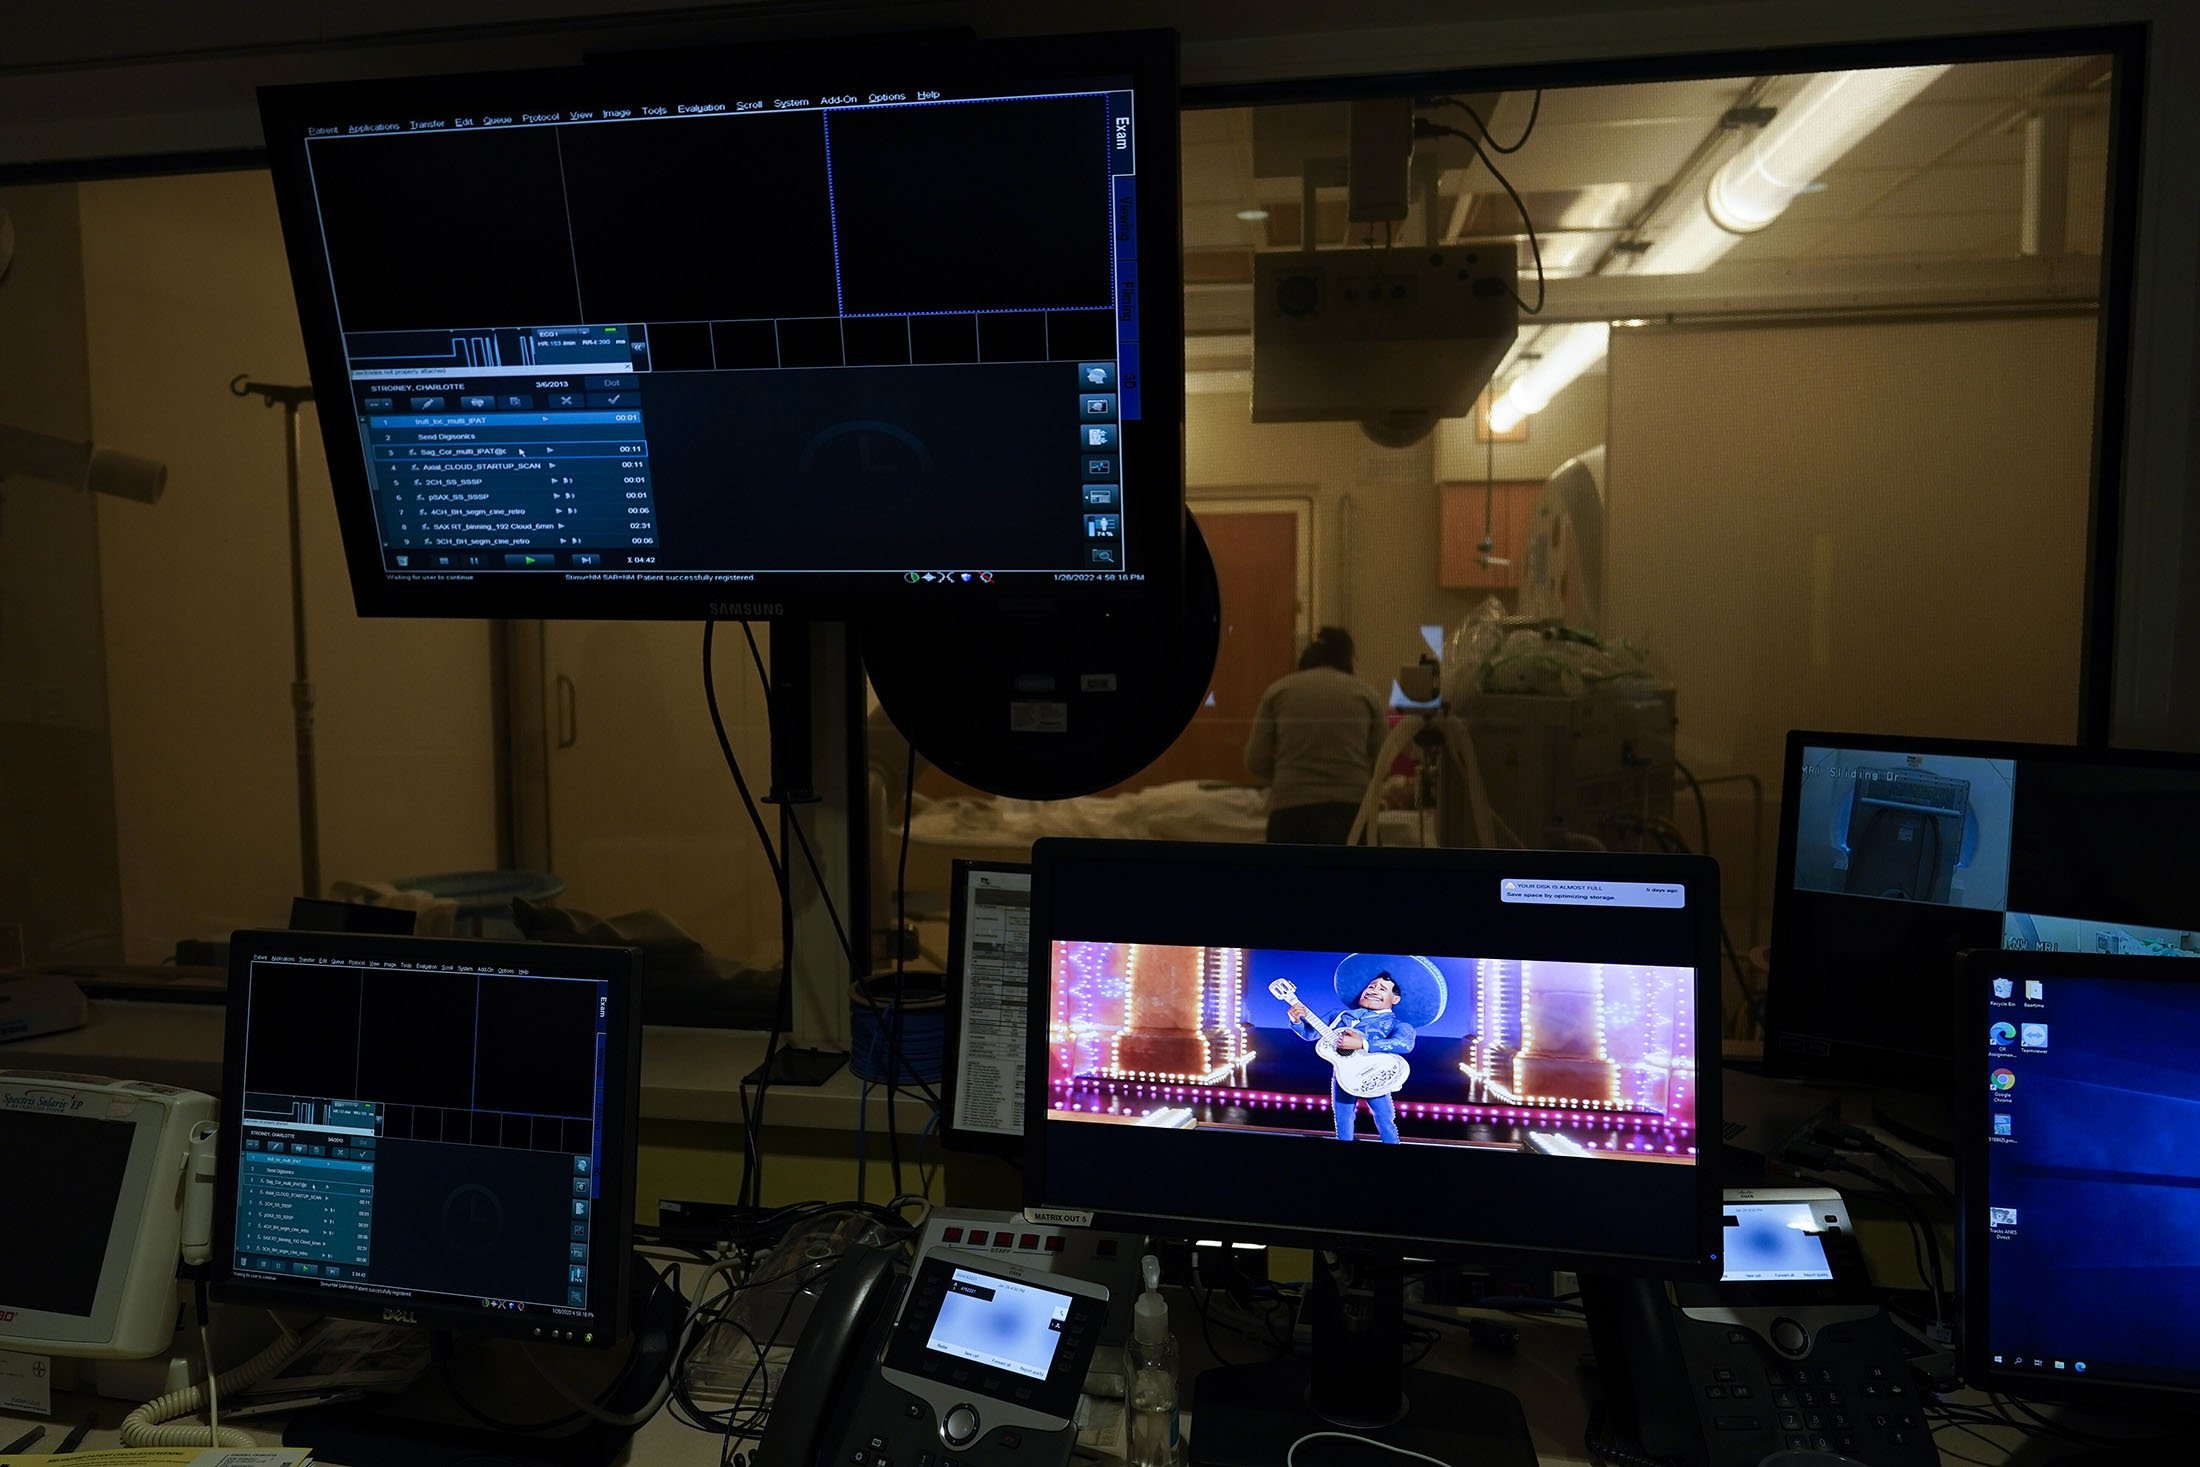 Film animasi Coco ditampilkan di monitor saat Charlie Forte, 8, menerima MRI selama hari yang panjang pengujian di Children's National Hospital, di Washington, AS, 26 Januari 2022. (AP Photo)